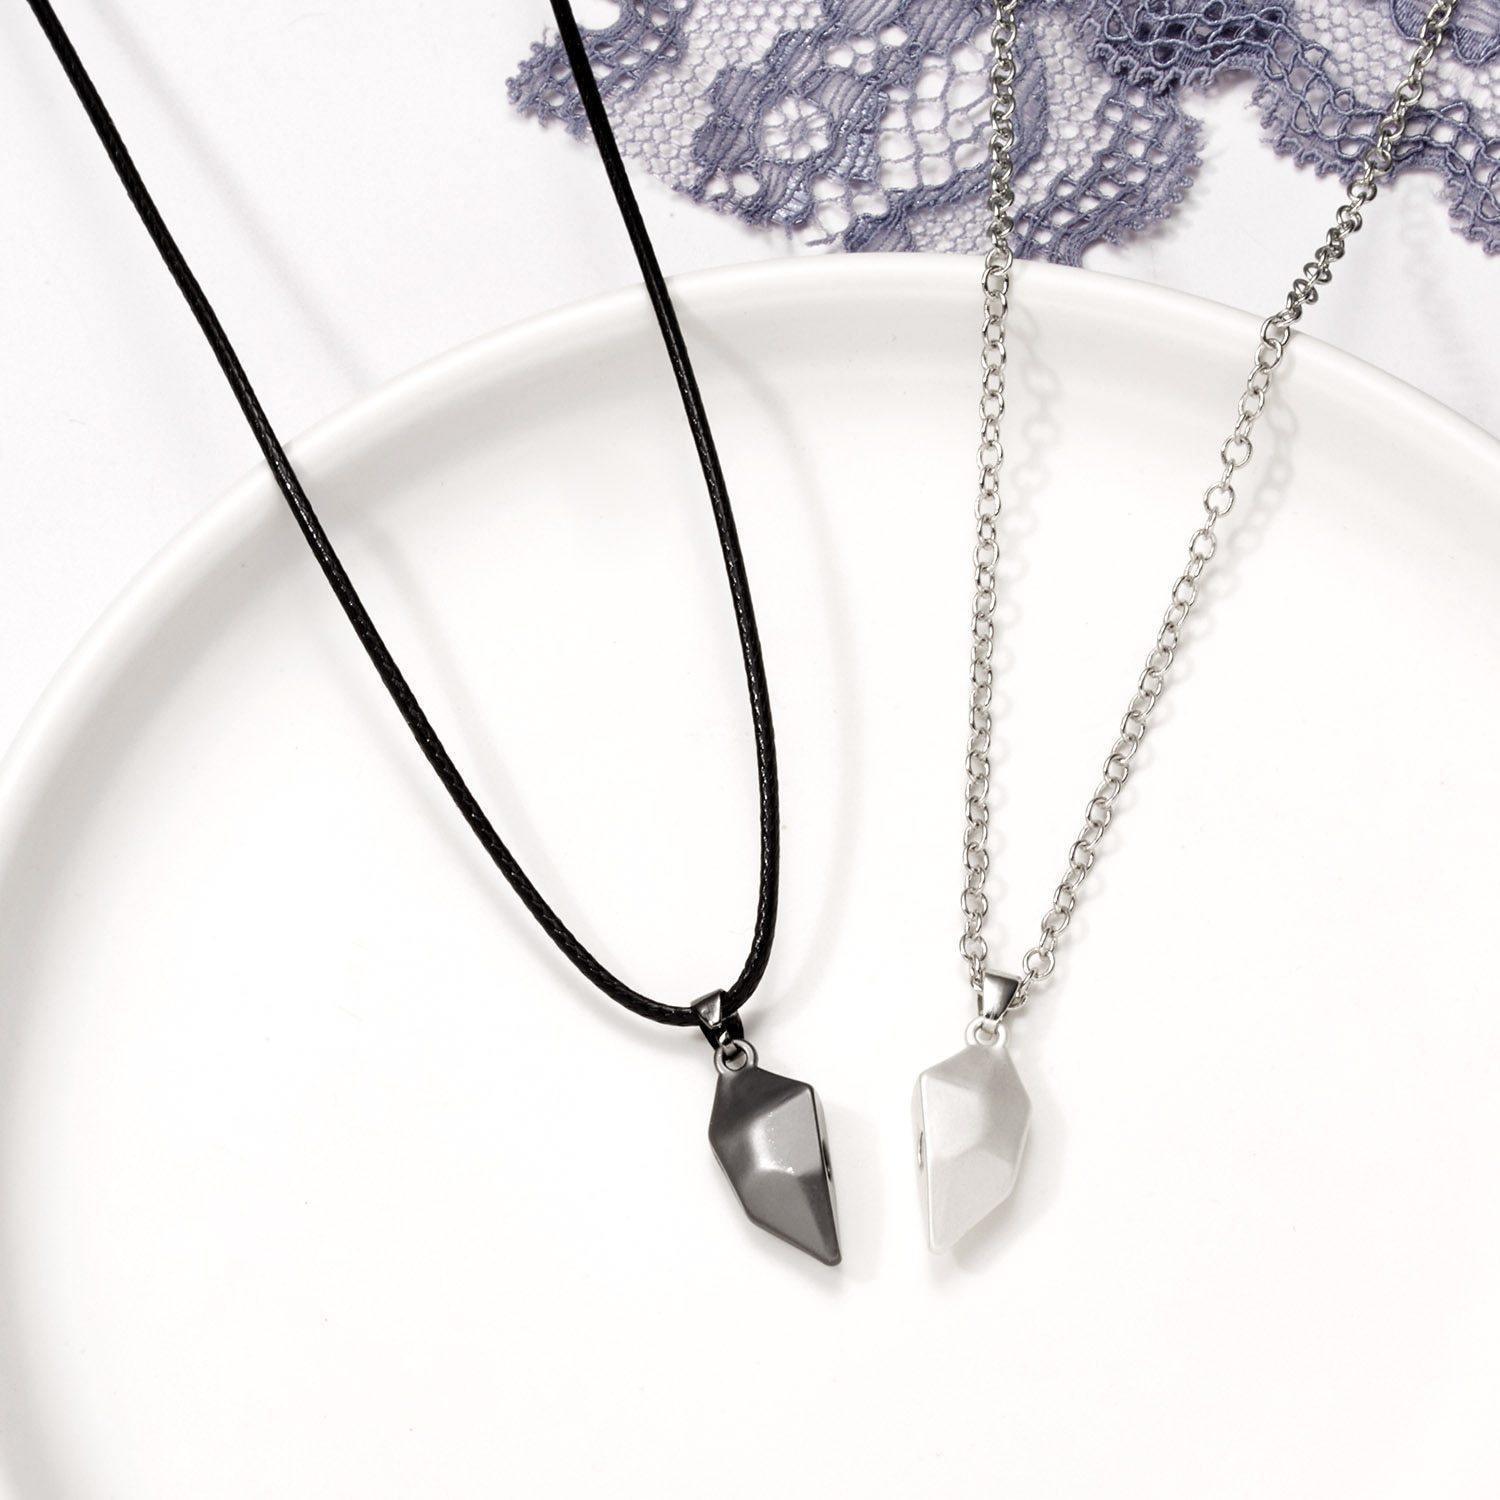 Best Friends Lock & Key Pendant Necklaces - 2 Pack | Bff jewelry, Best  friend necklaces, Bff necklaces